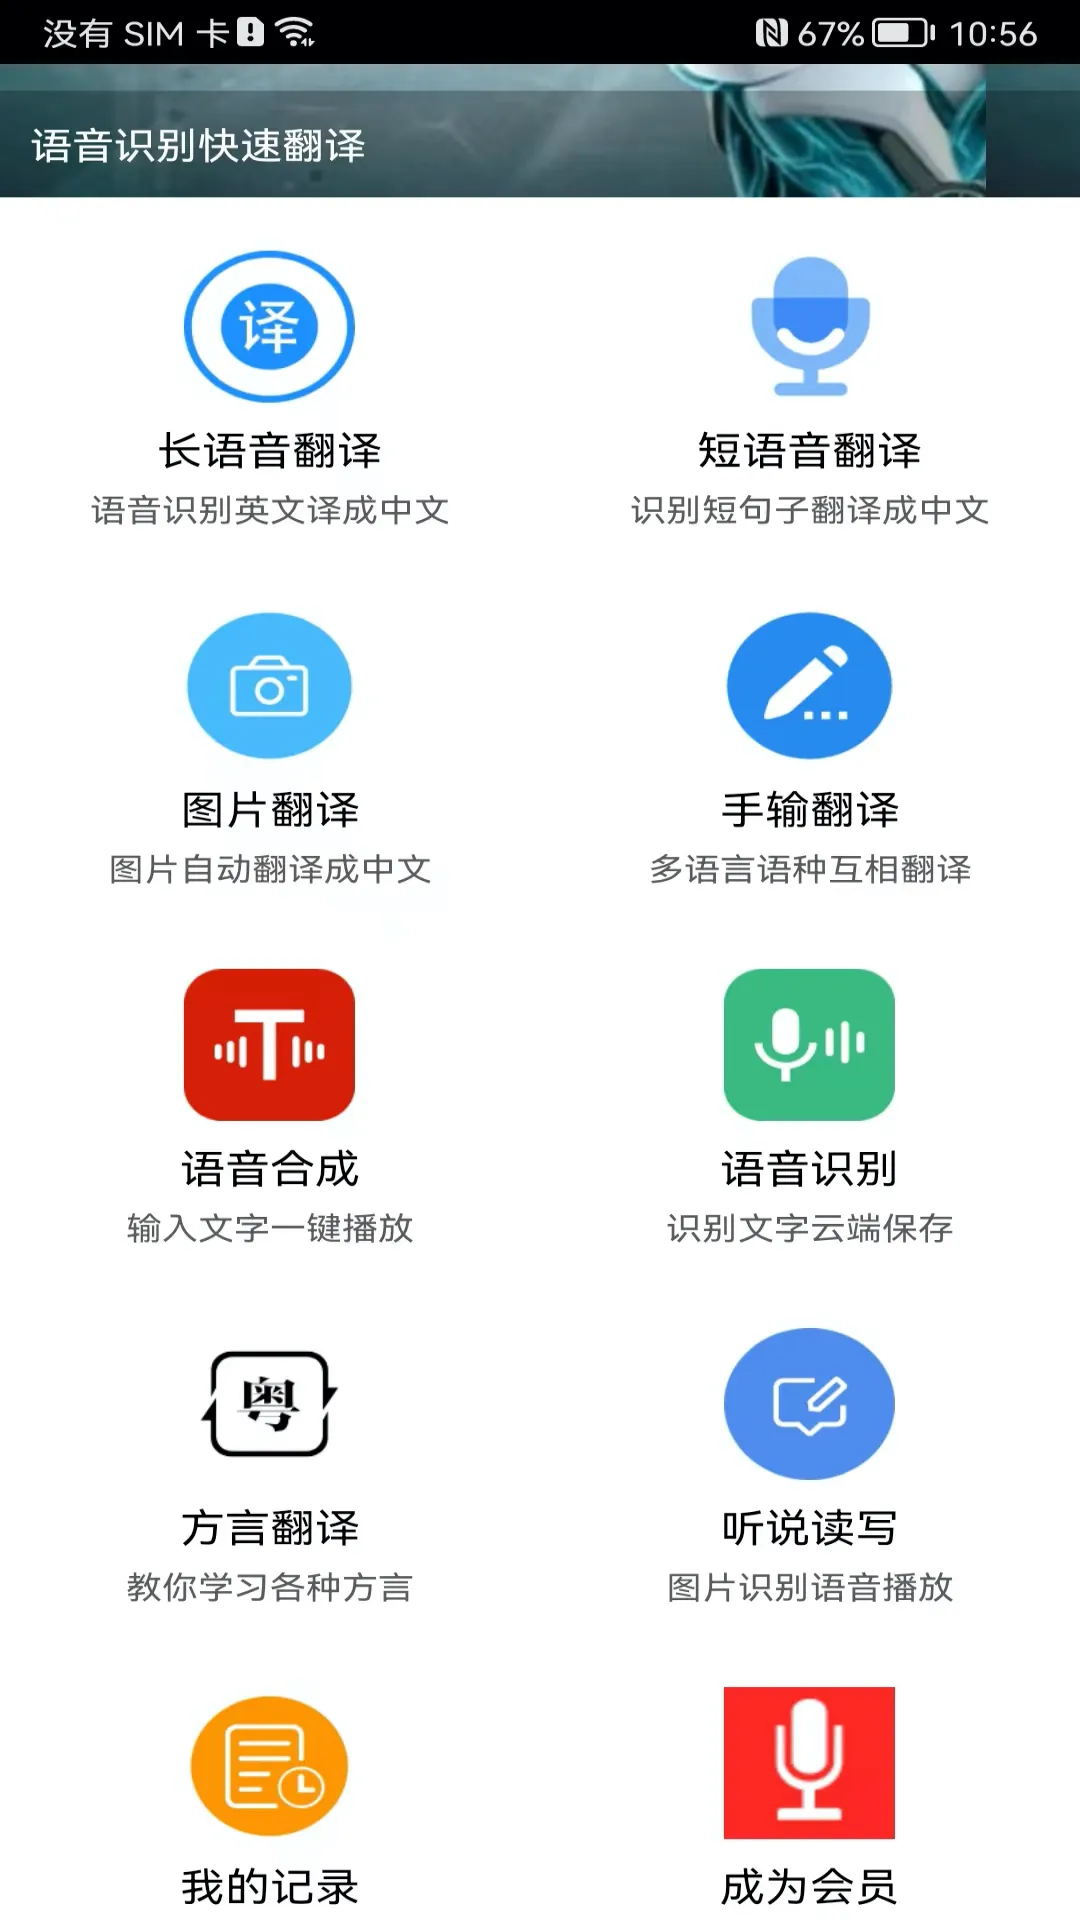 福清话翻译普通话软件哪个好 火爆的福清话翻译普通话软件下载